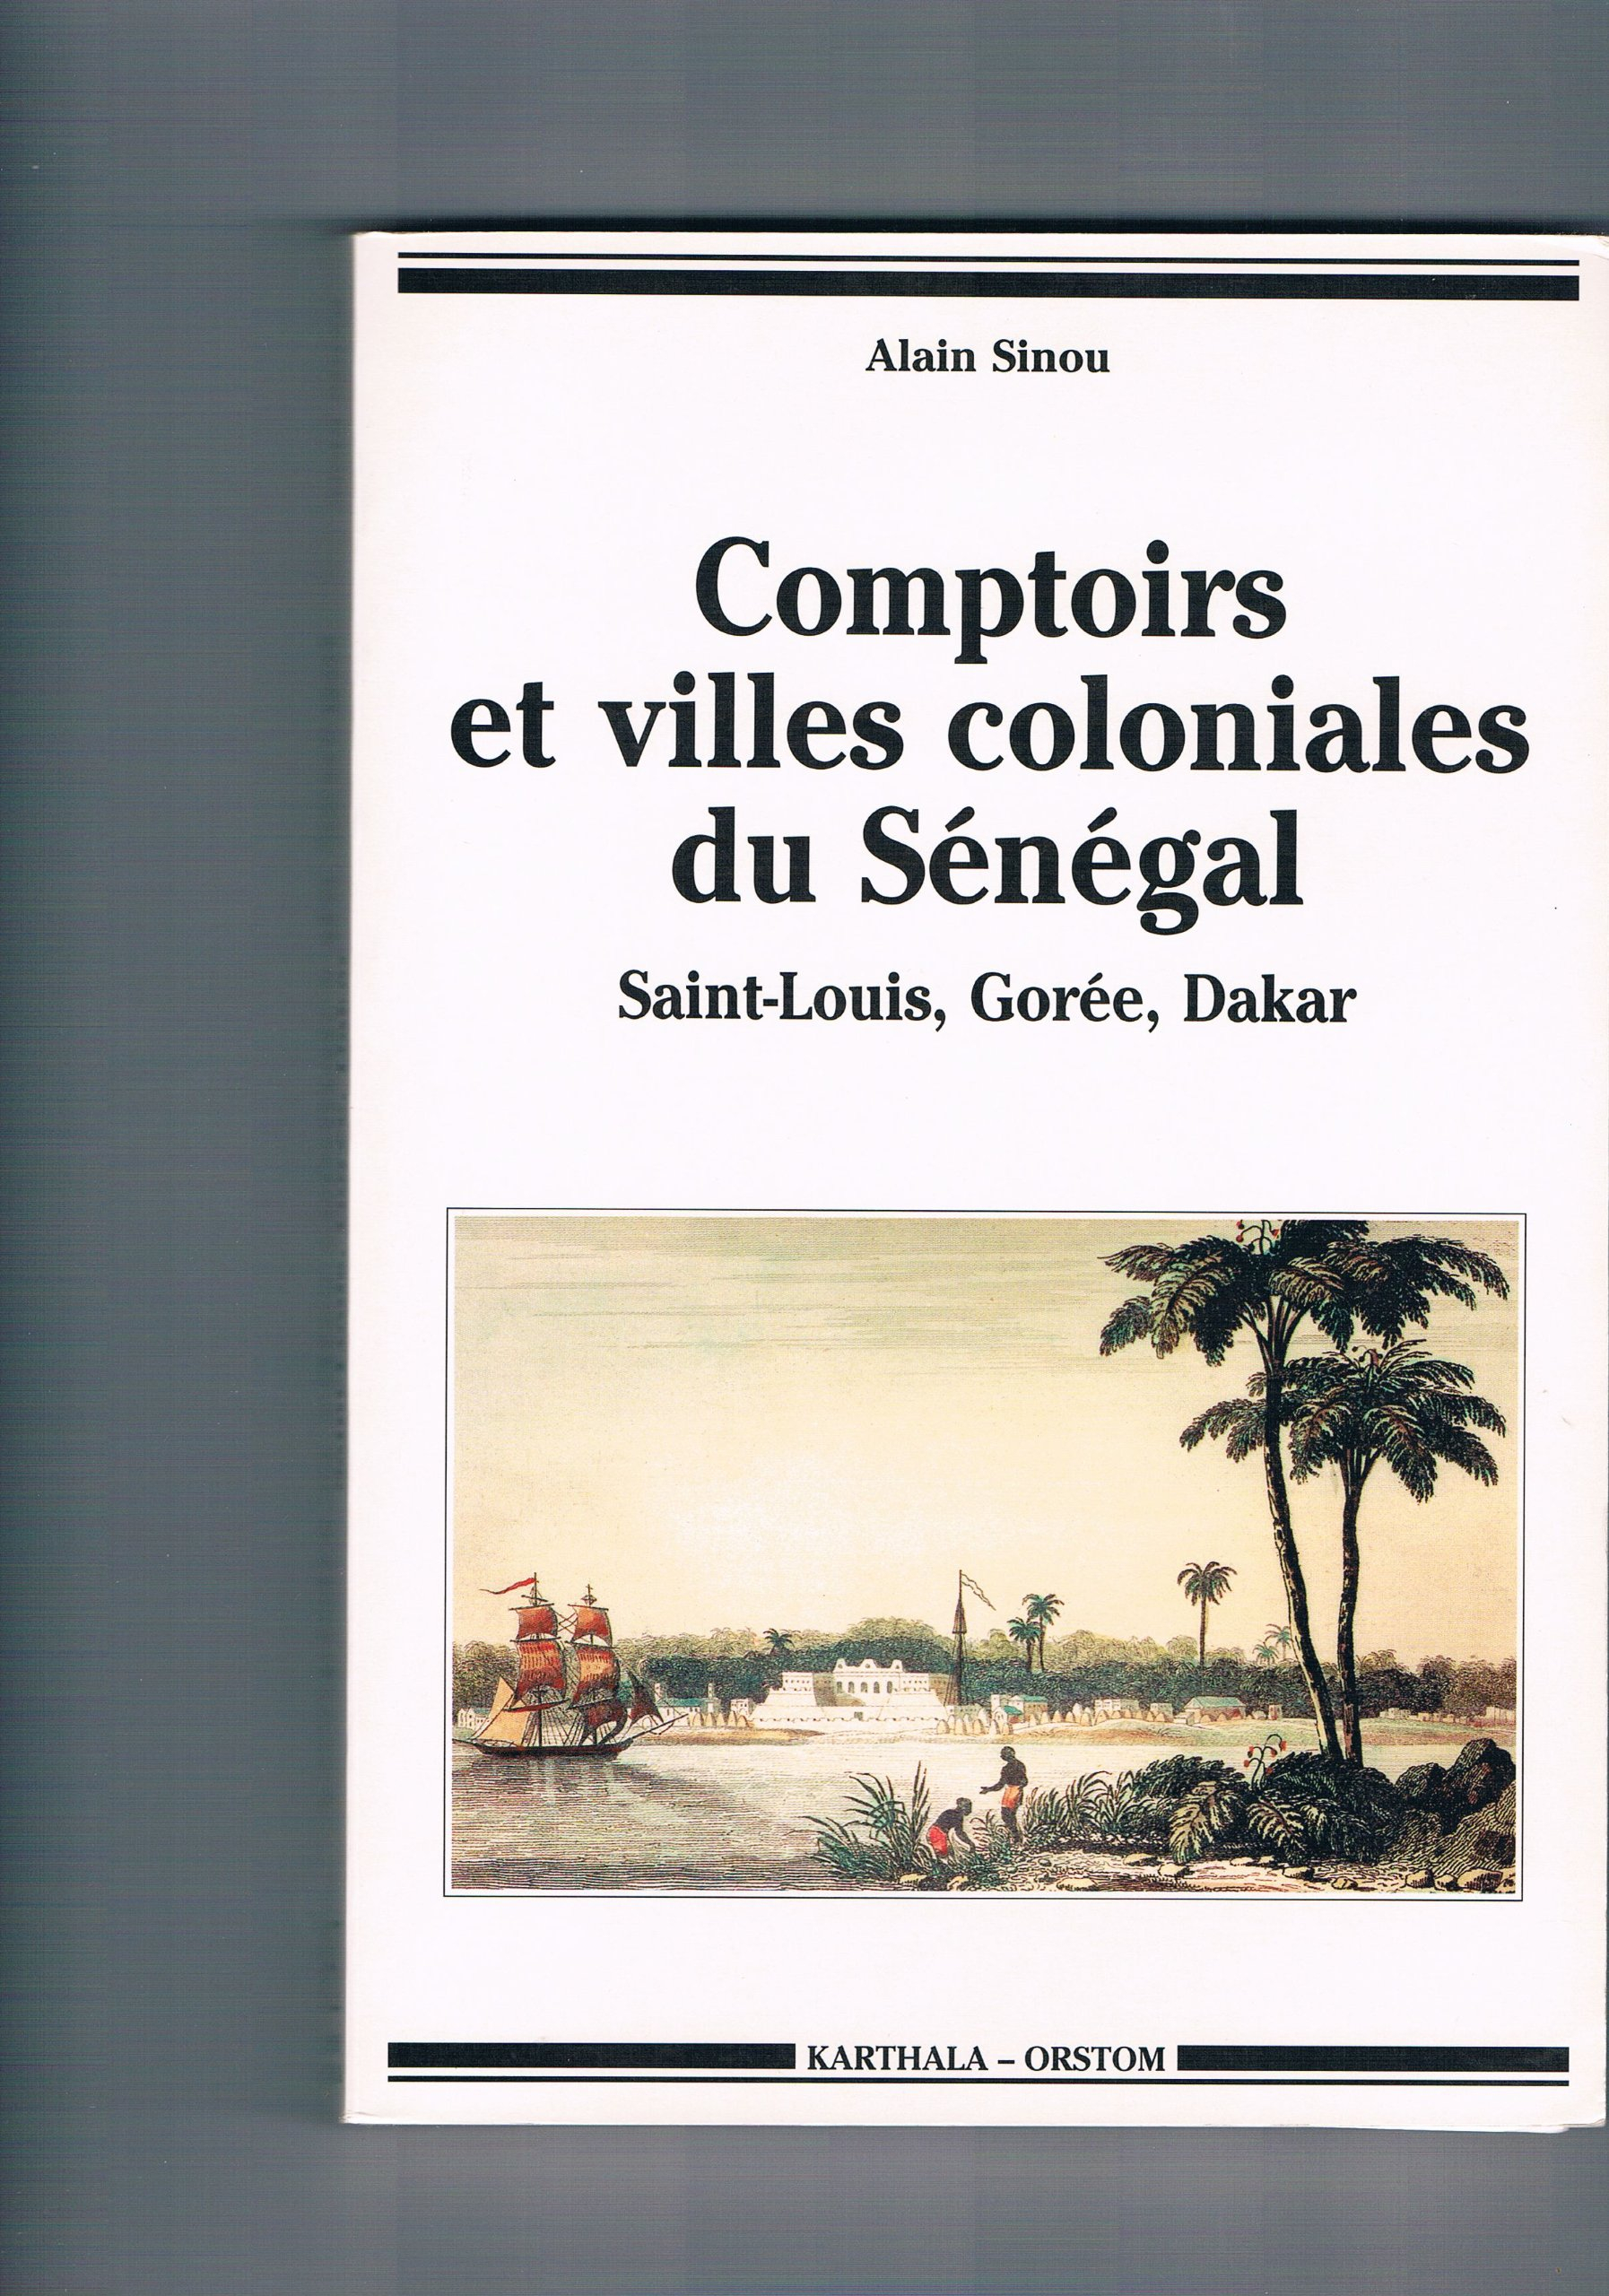 Comptoirs et villes coloniales du Sénégal : Saint-Louis, Gorée, Dakar